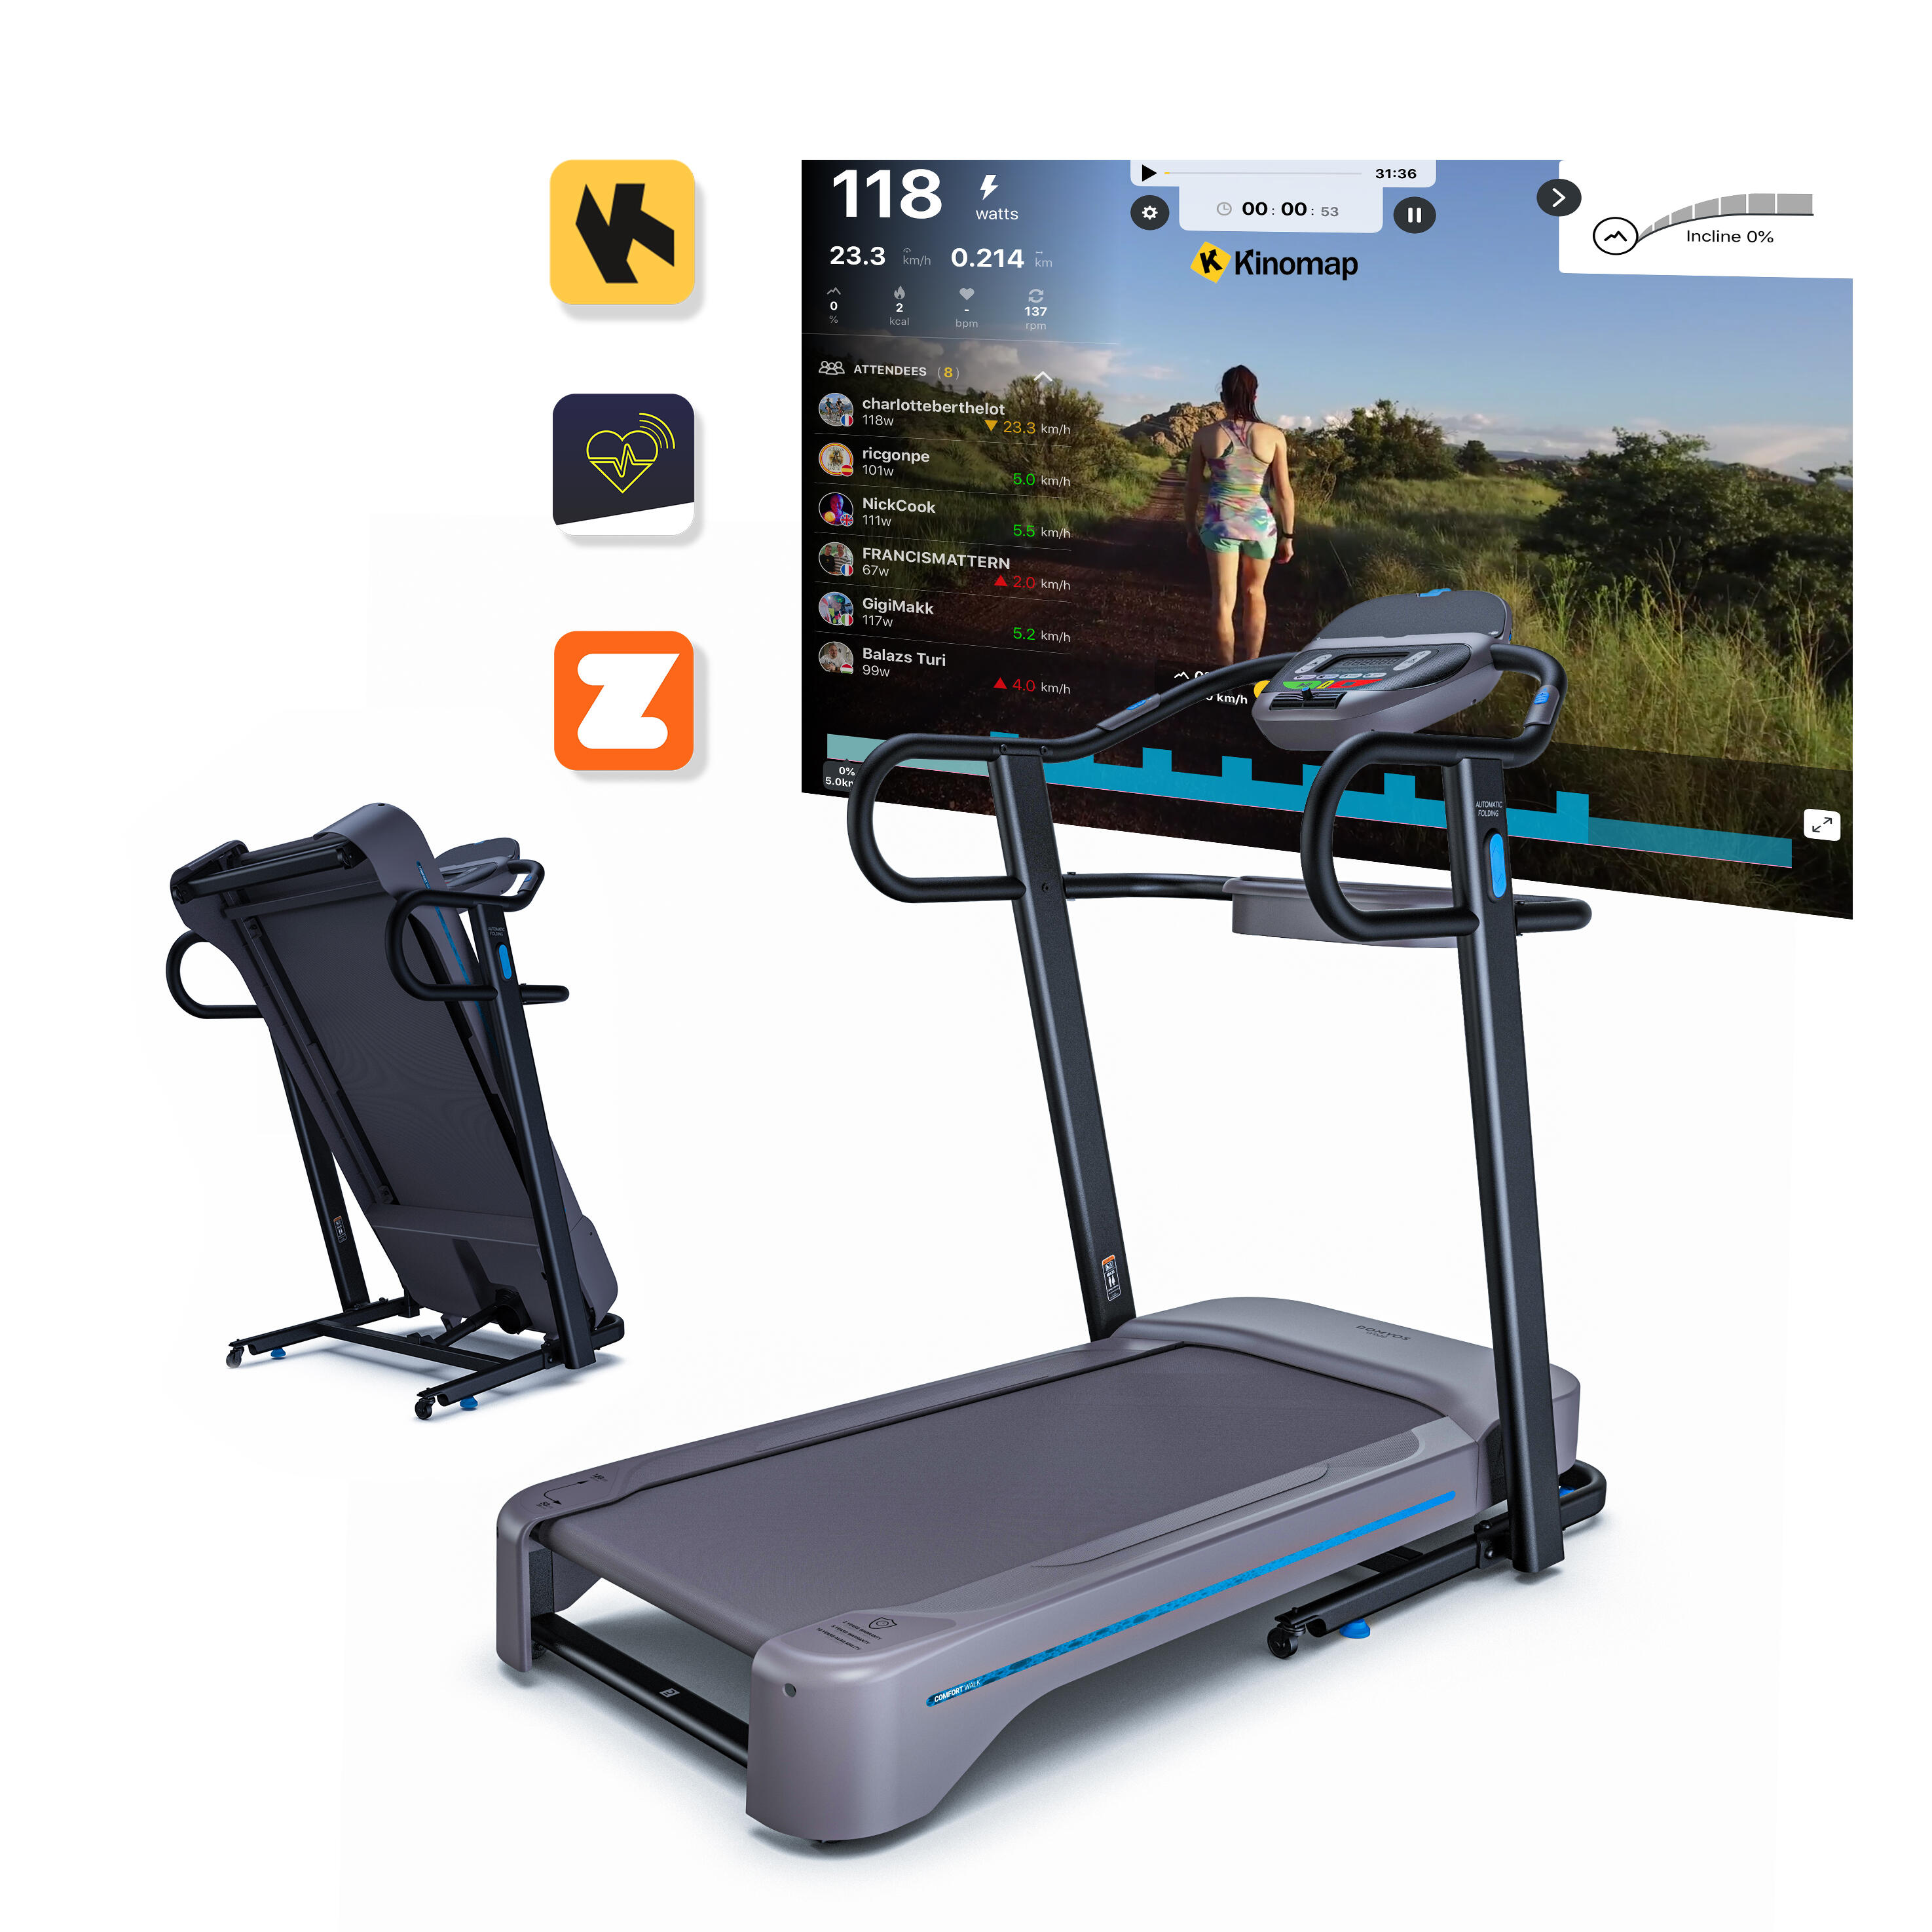 110 V Treadmill - W 900